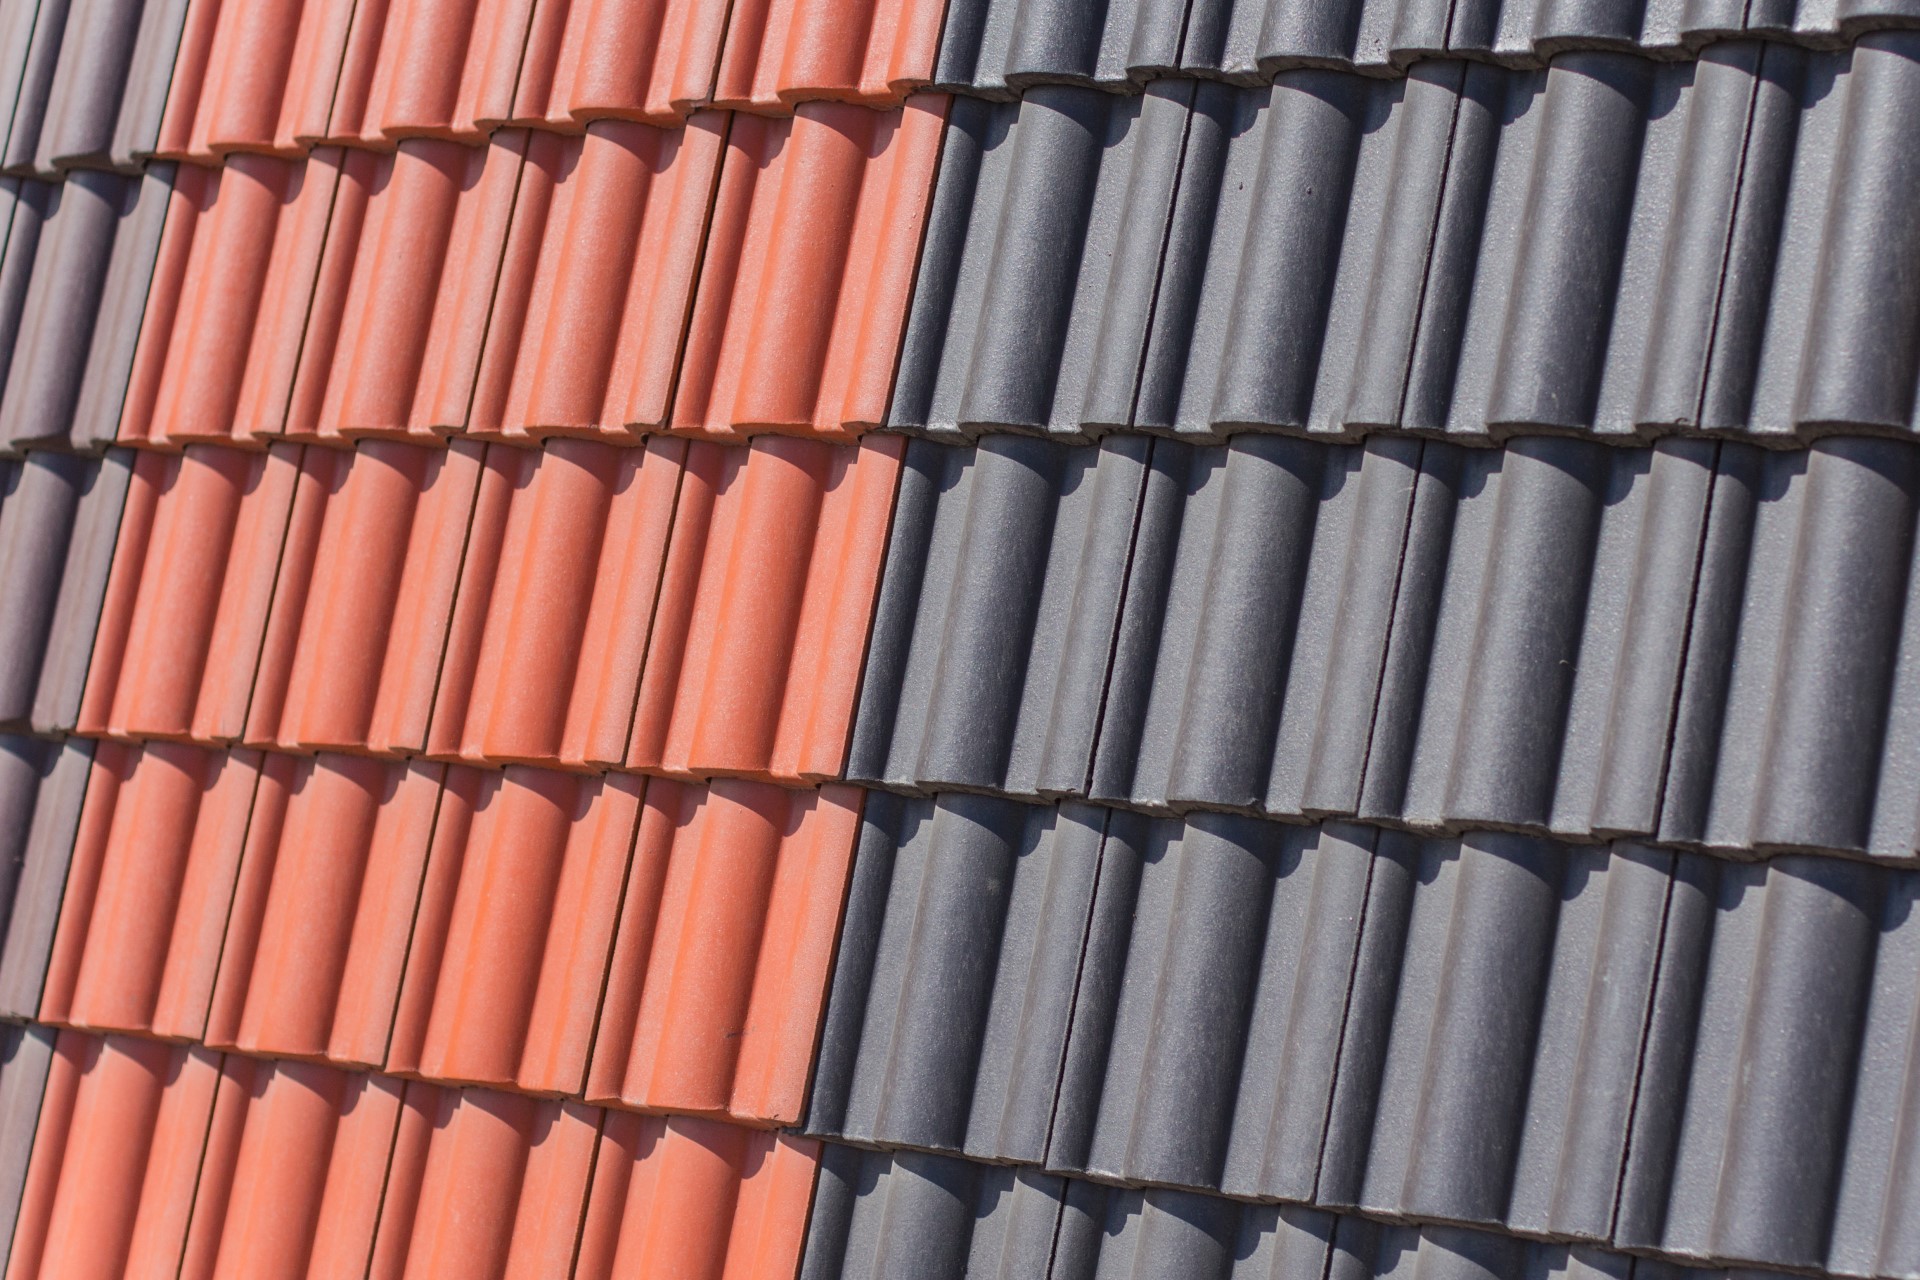 Dachówka betonowa, cementowa może stanowić alternatywę do dachówki ceramicznej